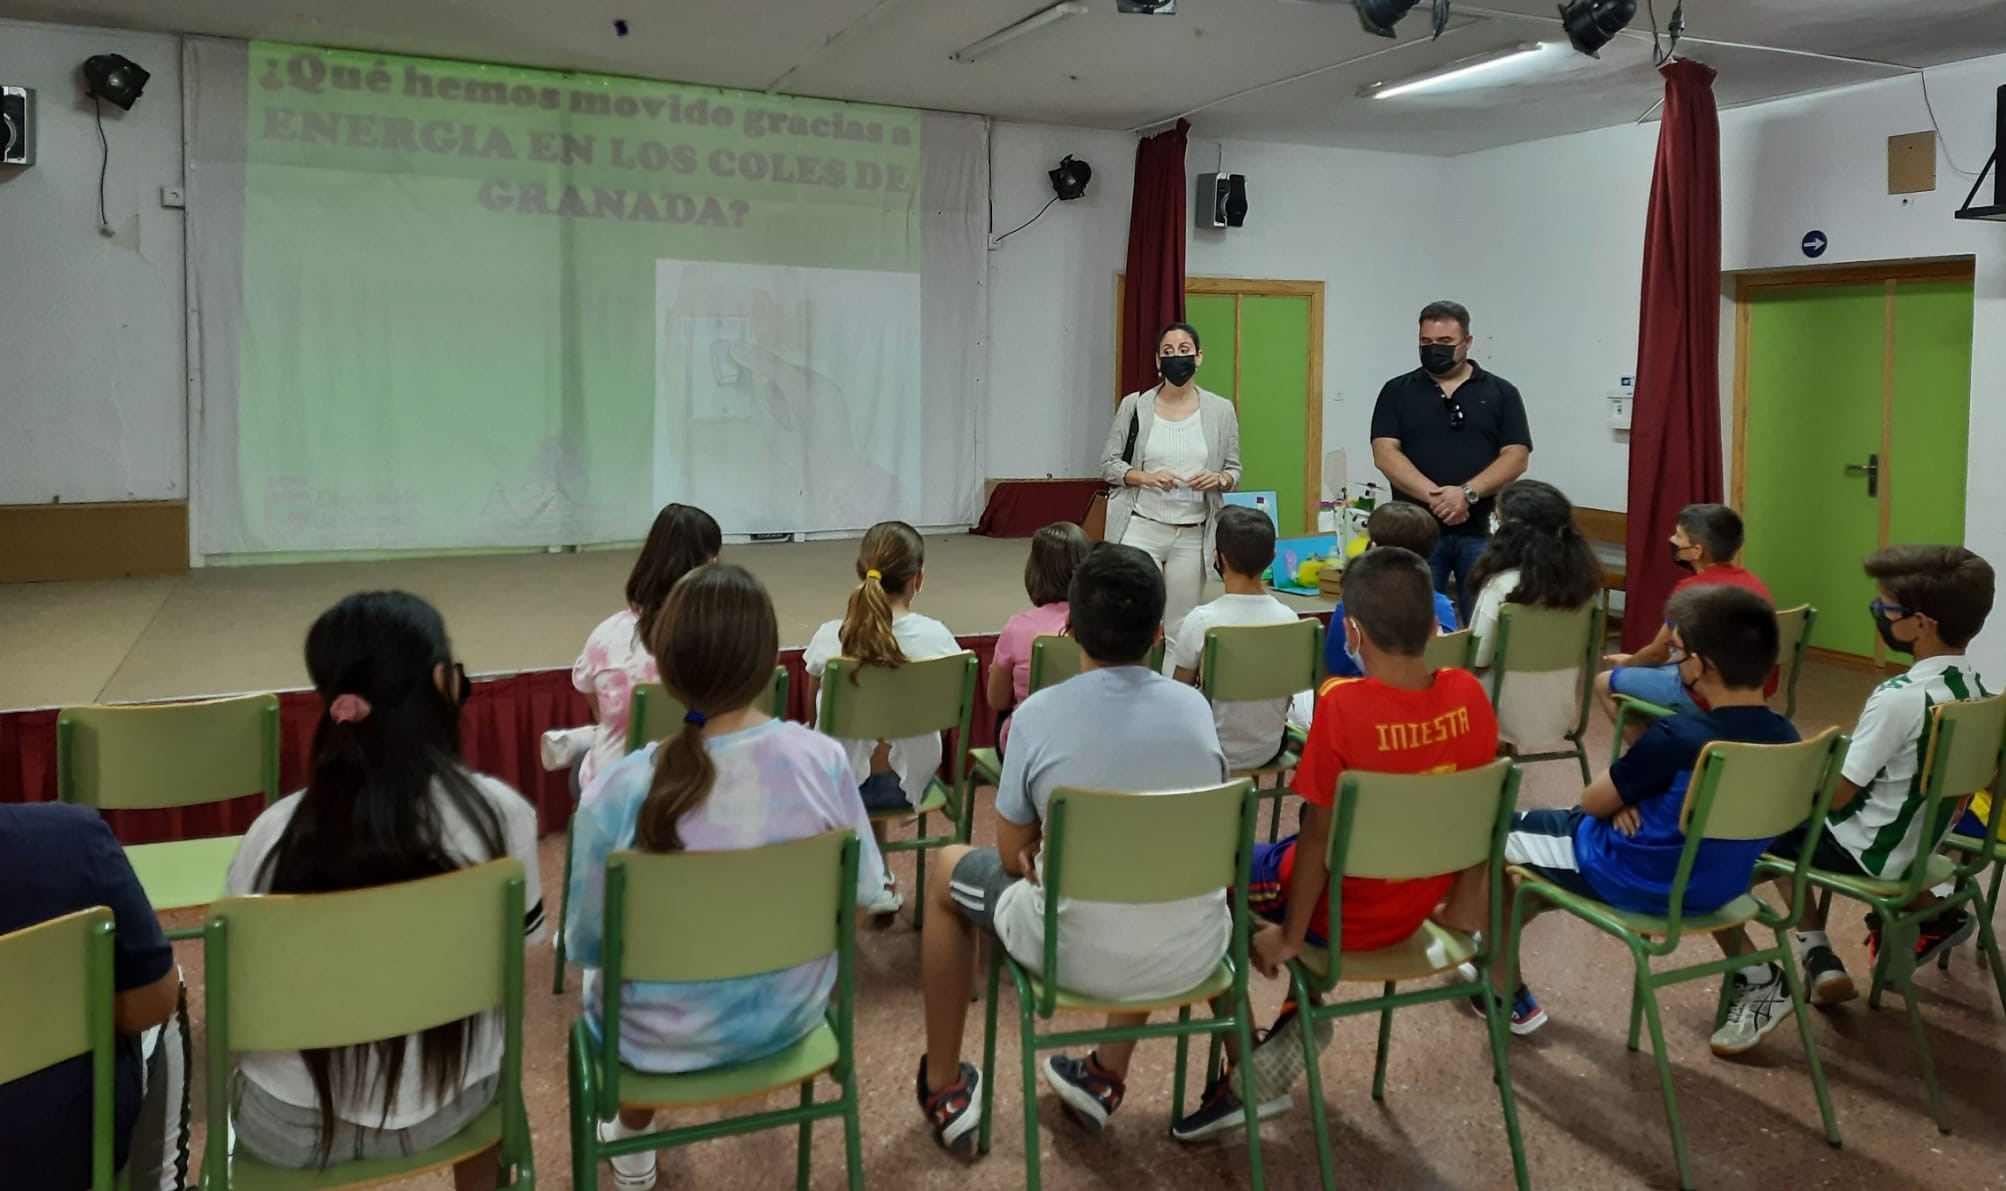 10 colegios de la provincia celebran los resultados obtenidos en el programa “Energía en los Coles de Granada”